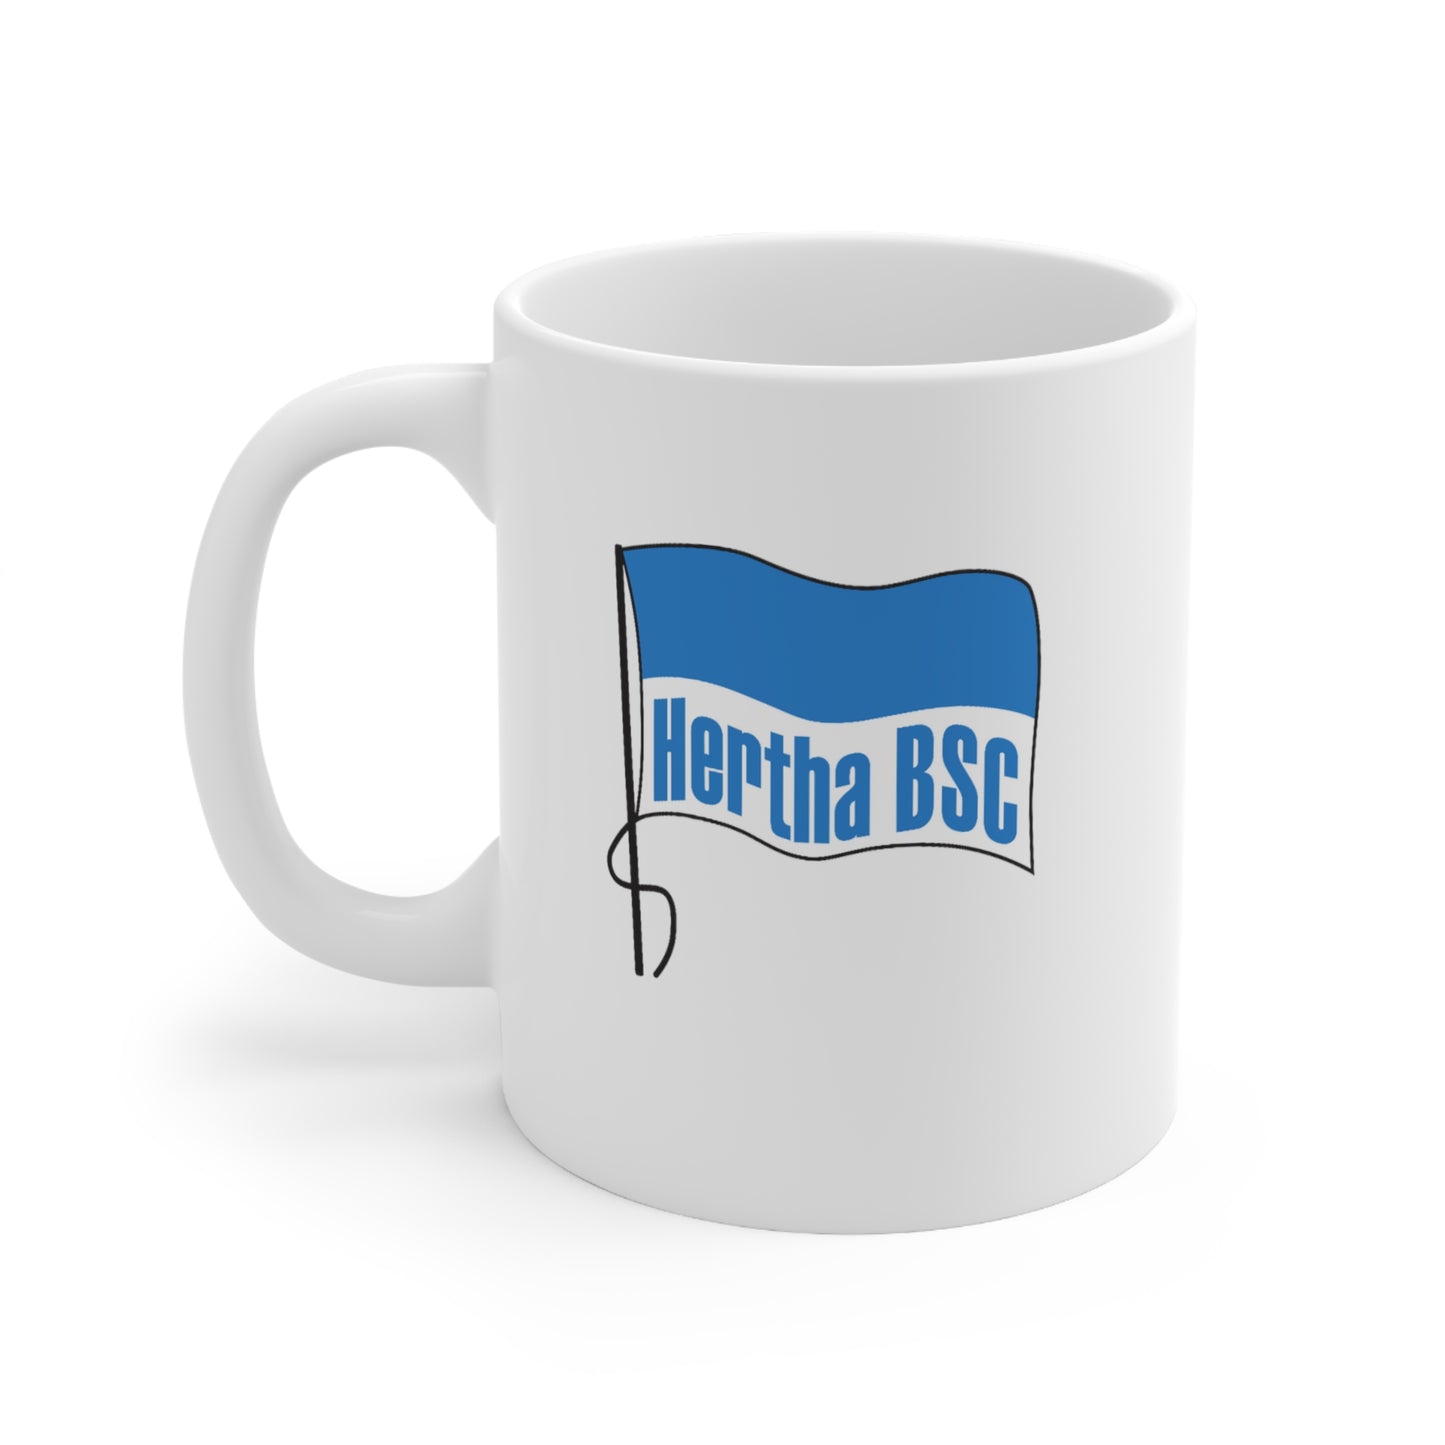 Hertha BSC Berlin (90's logo) Ceramic Mug